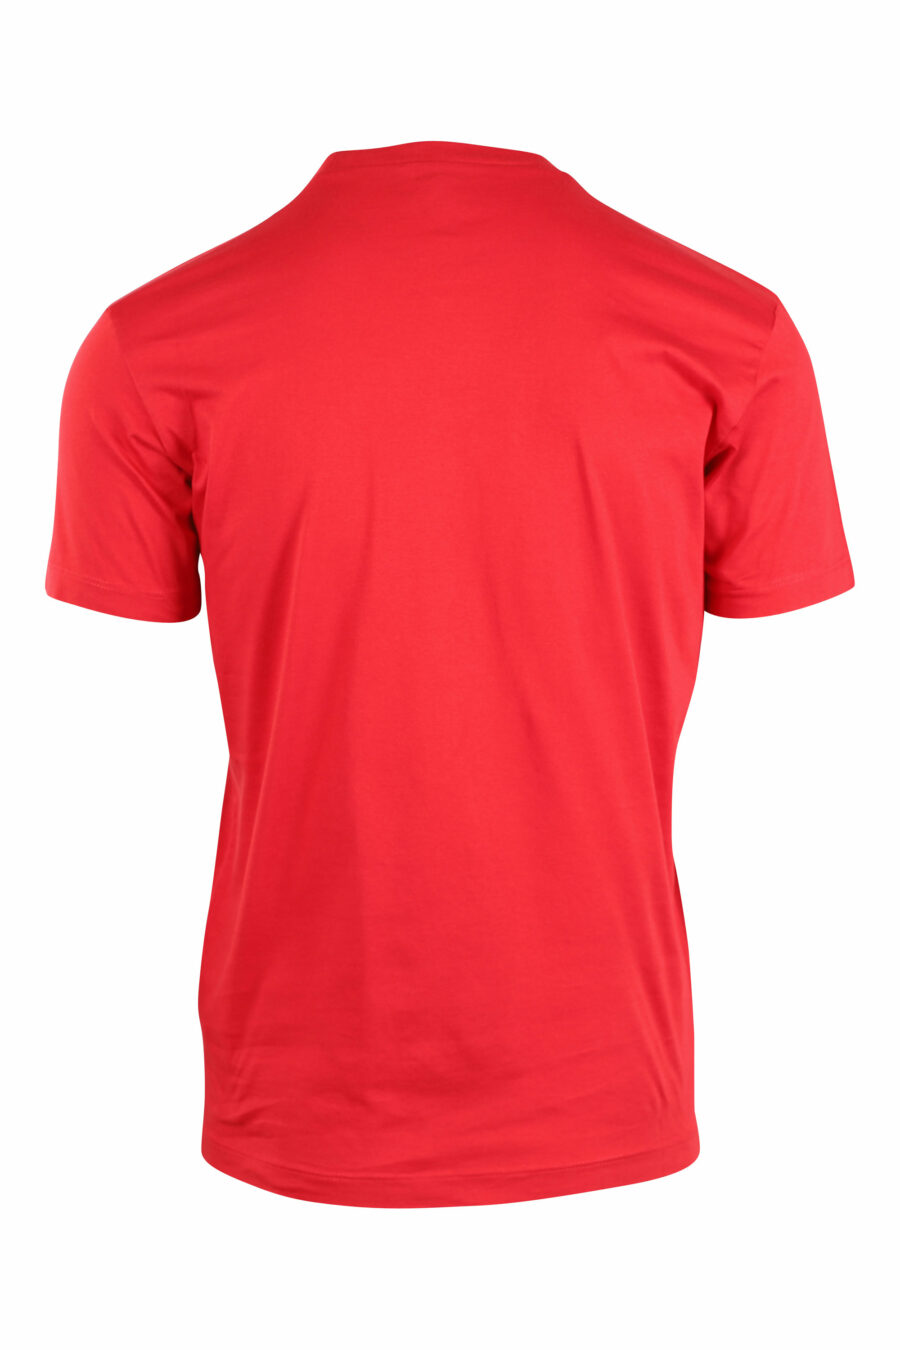 T-shirt vermelha com maxillover e folha - IMG 2642